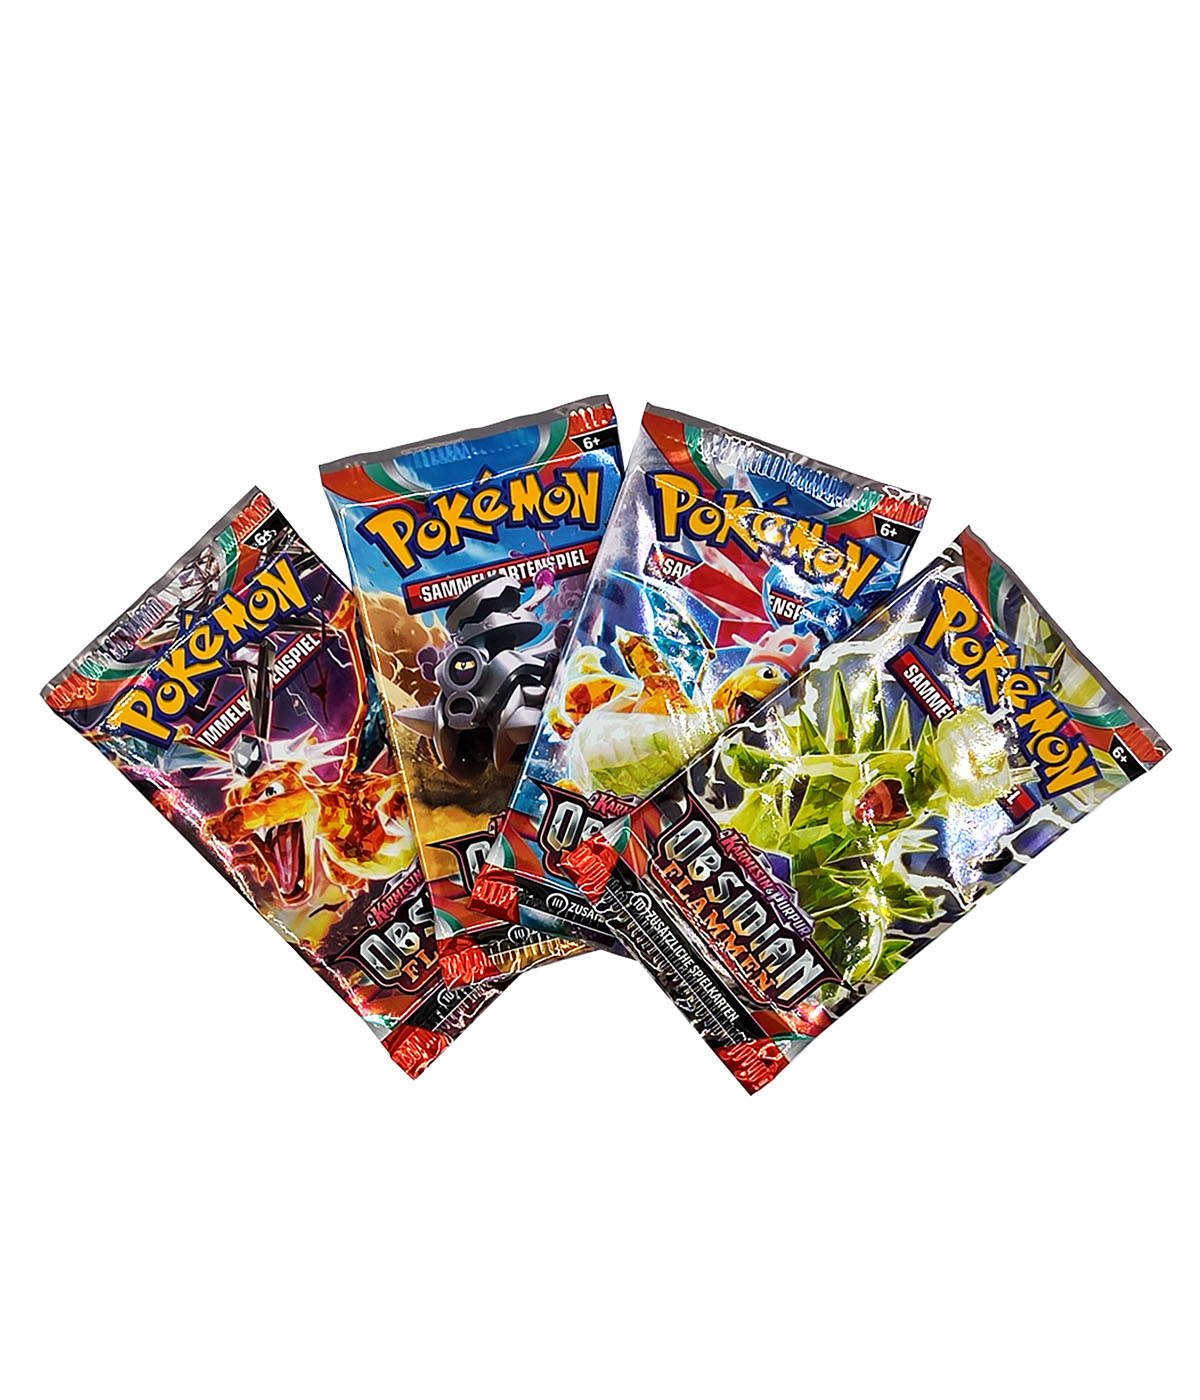 Pokémon 2er Mix-Bundle "Obsidianflammen + Silberne Sturmwinde" - 2 Displays mit je 18 Boosterpacks